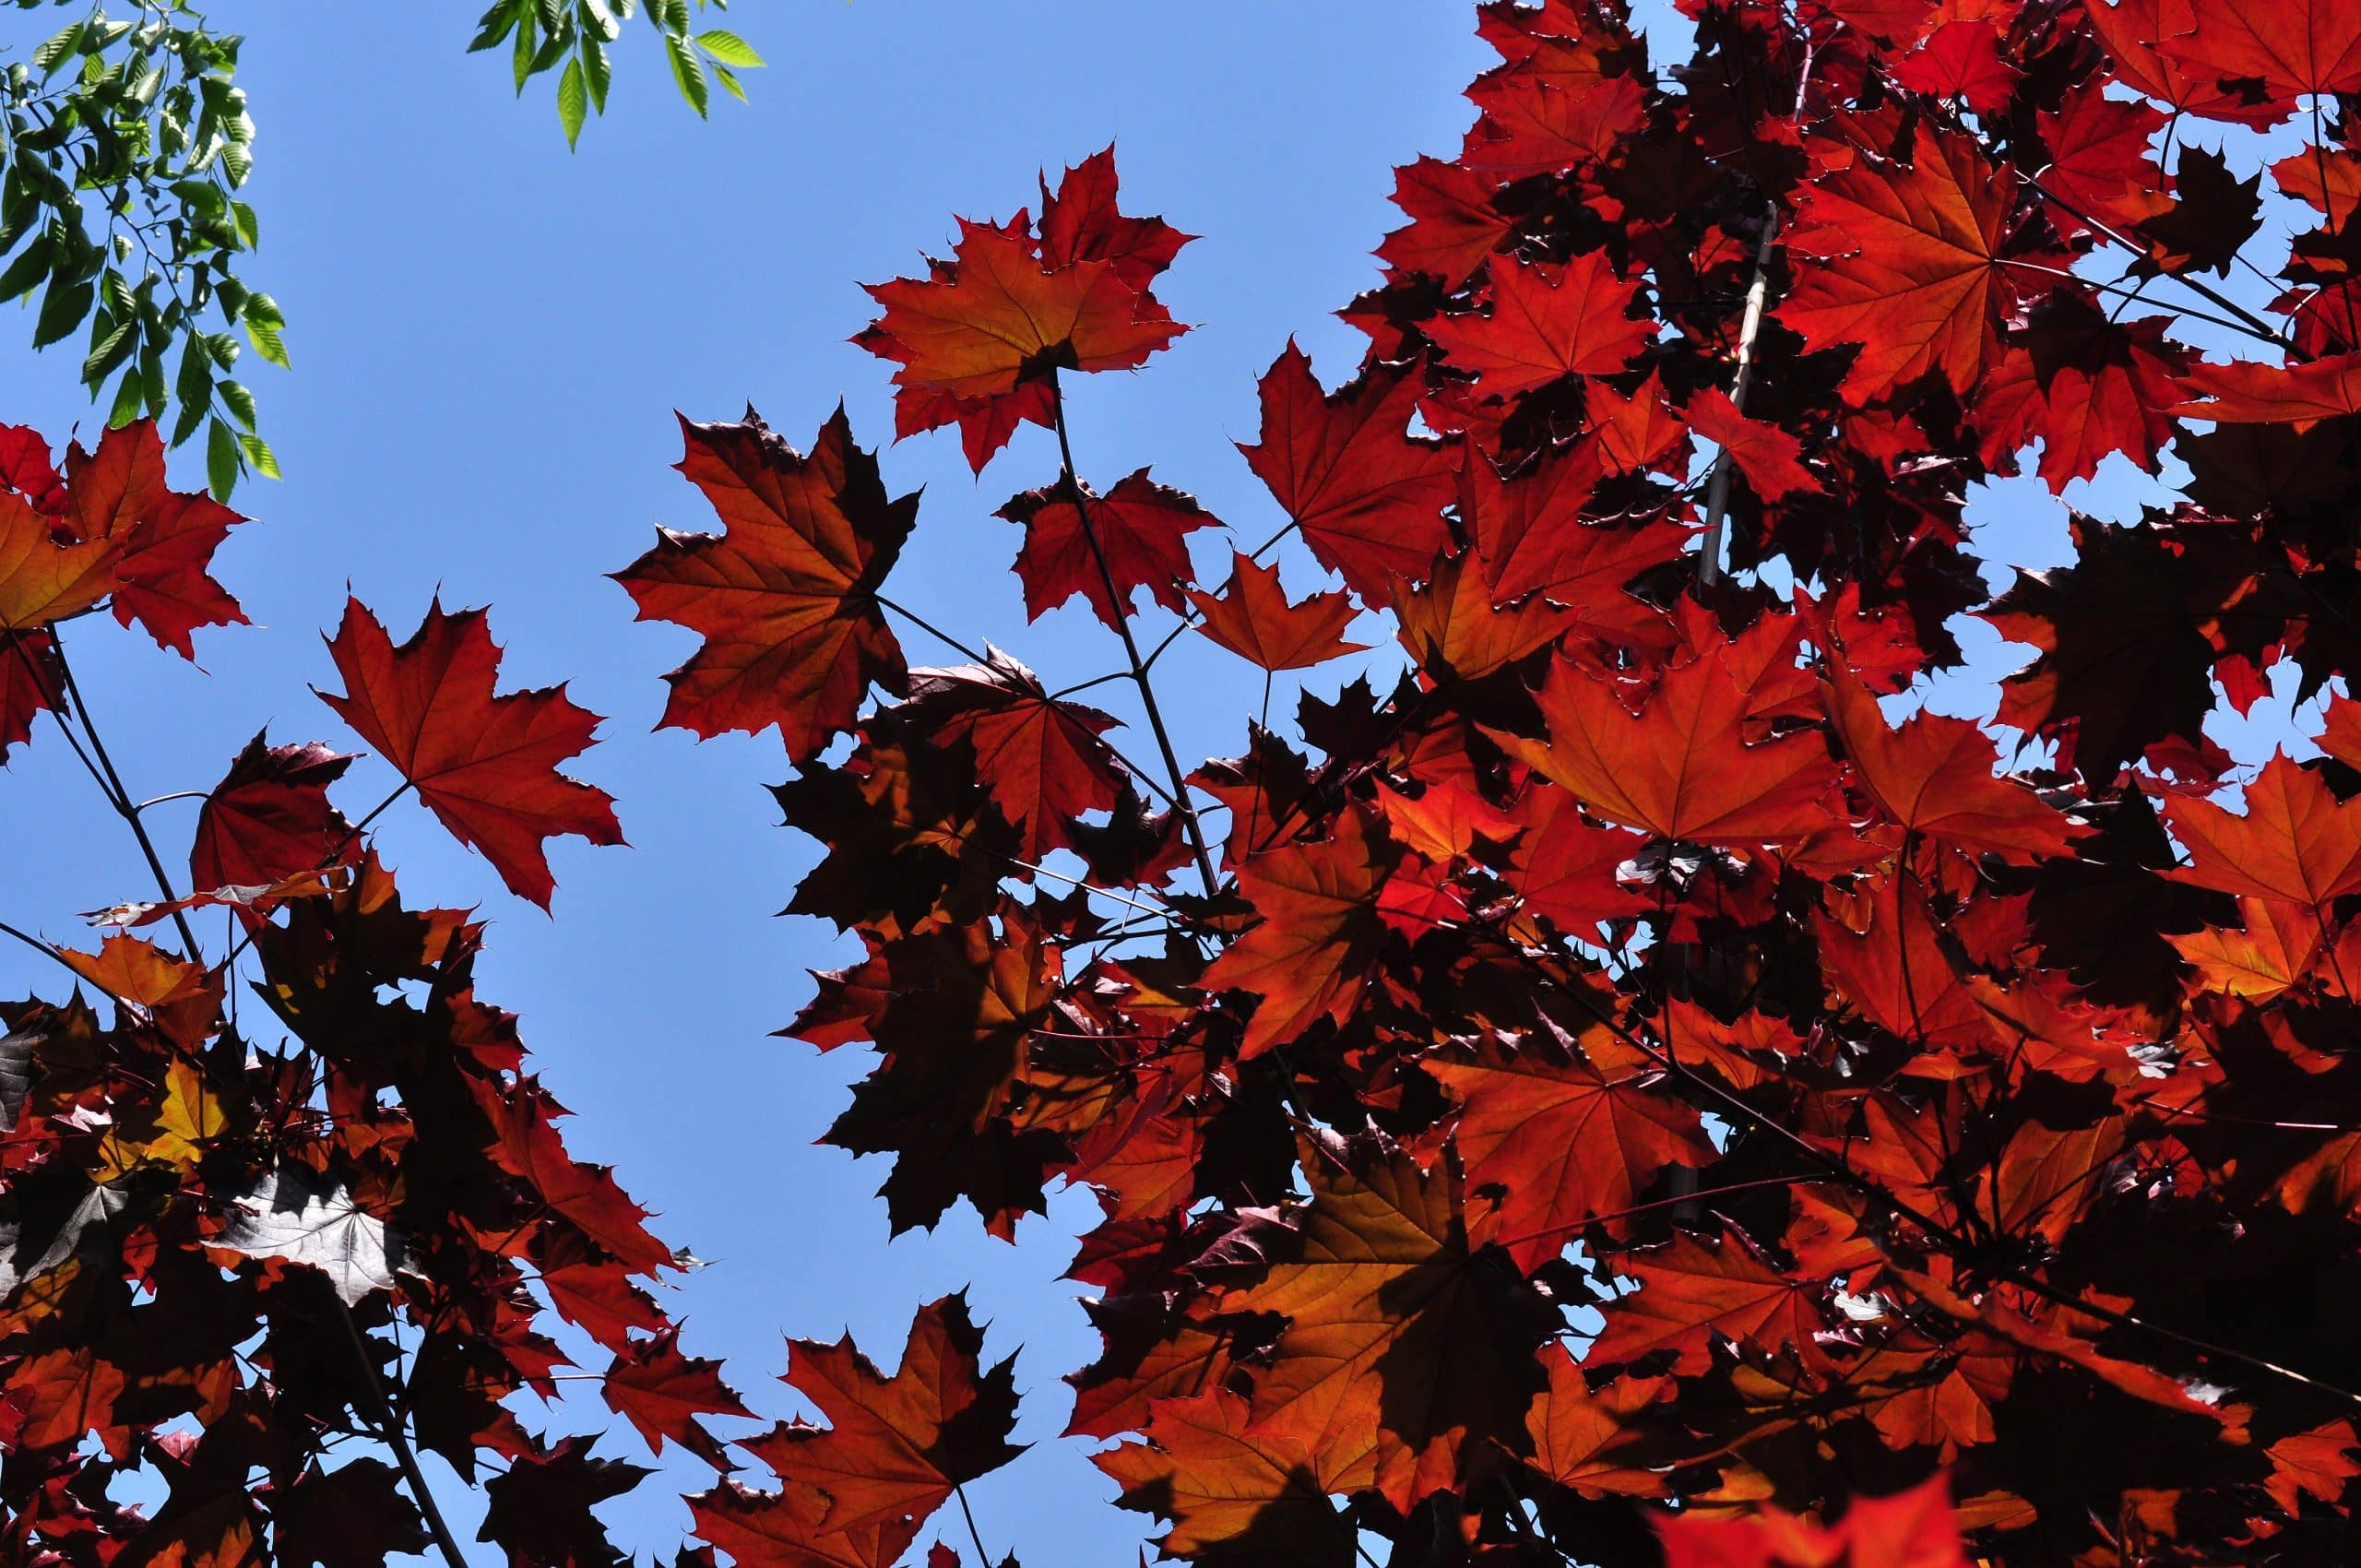 crimson king maple leaves